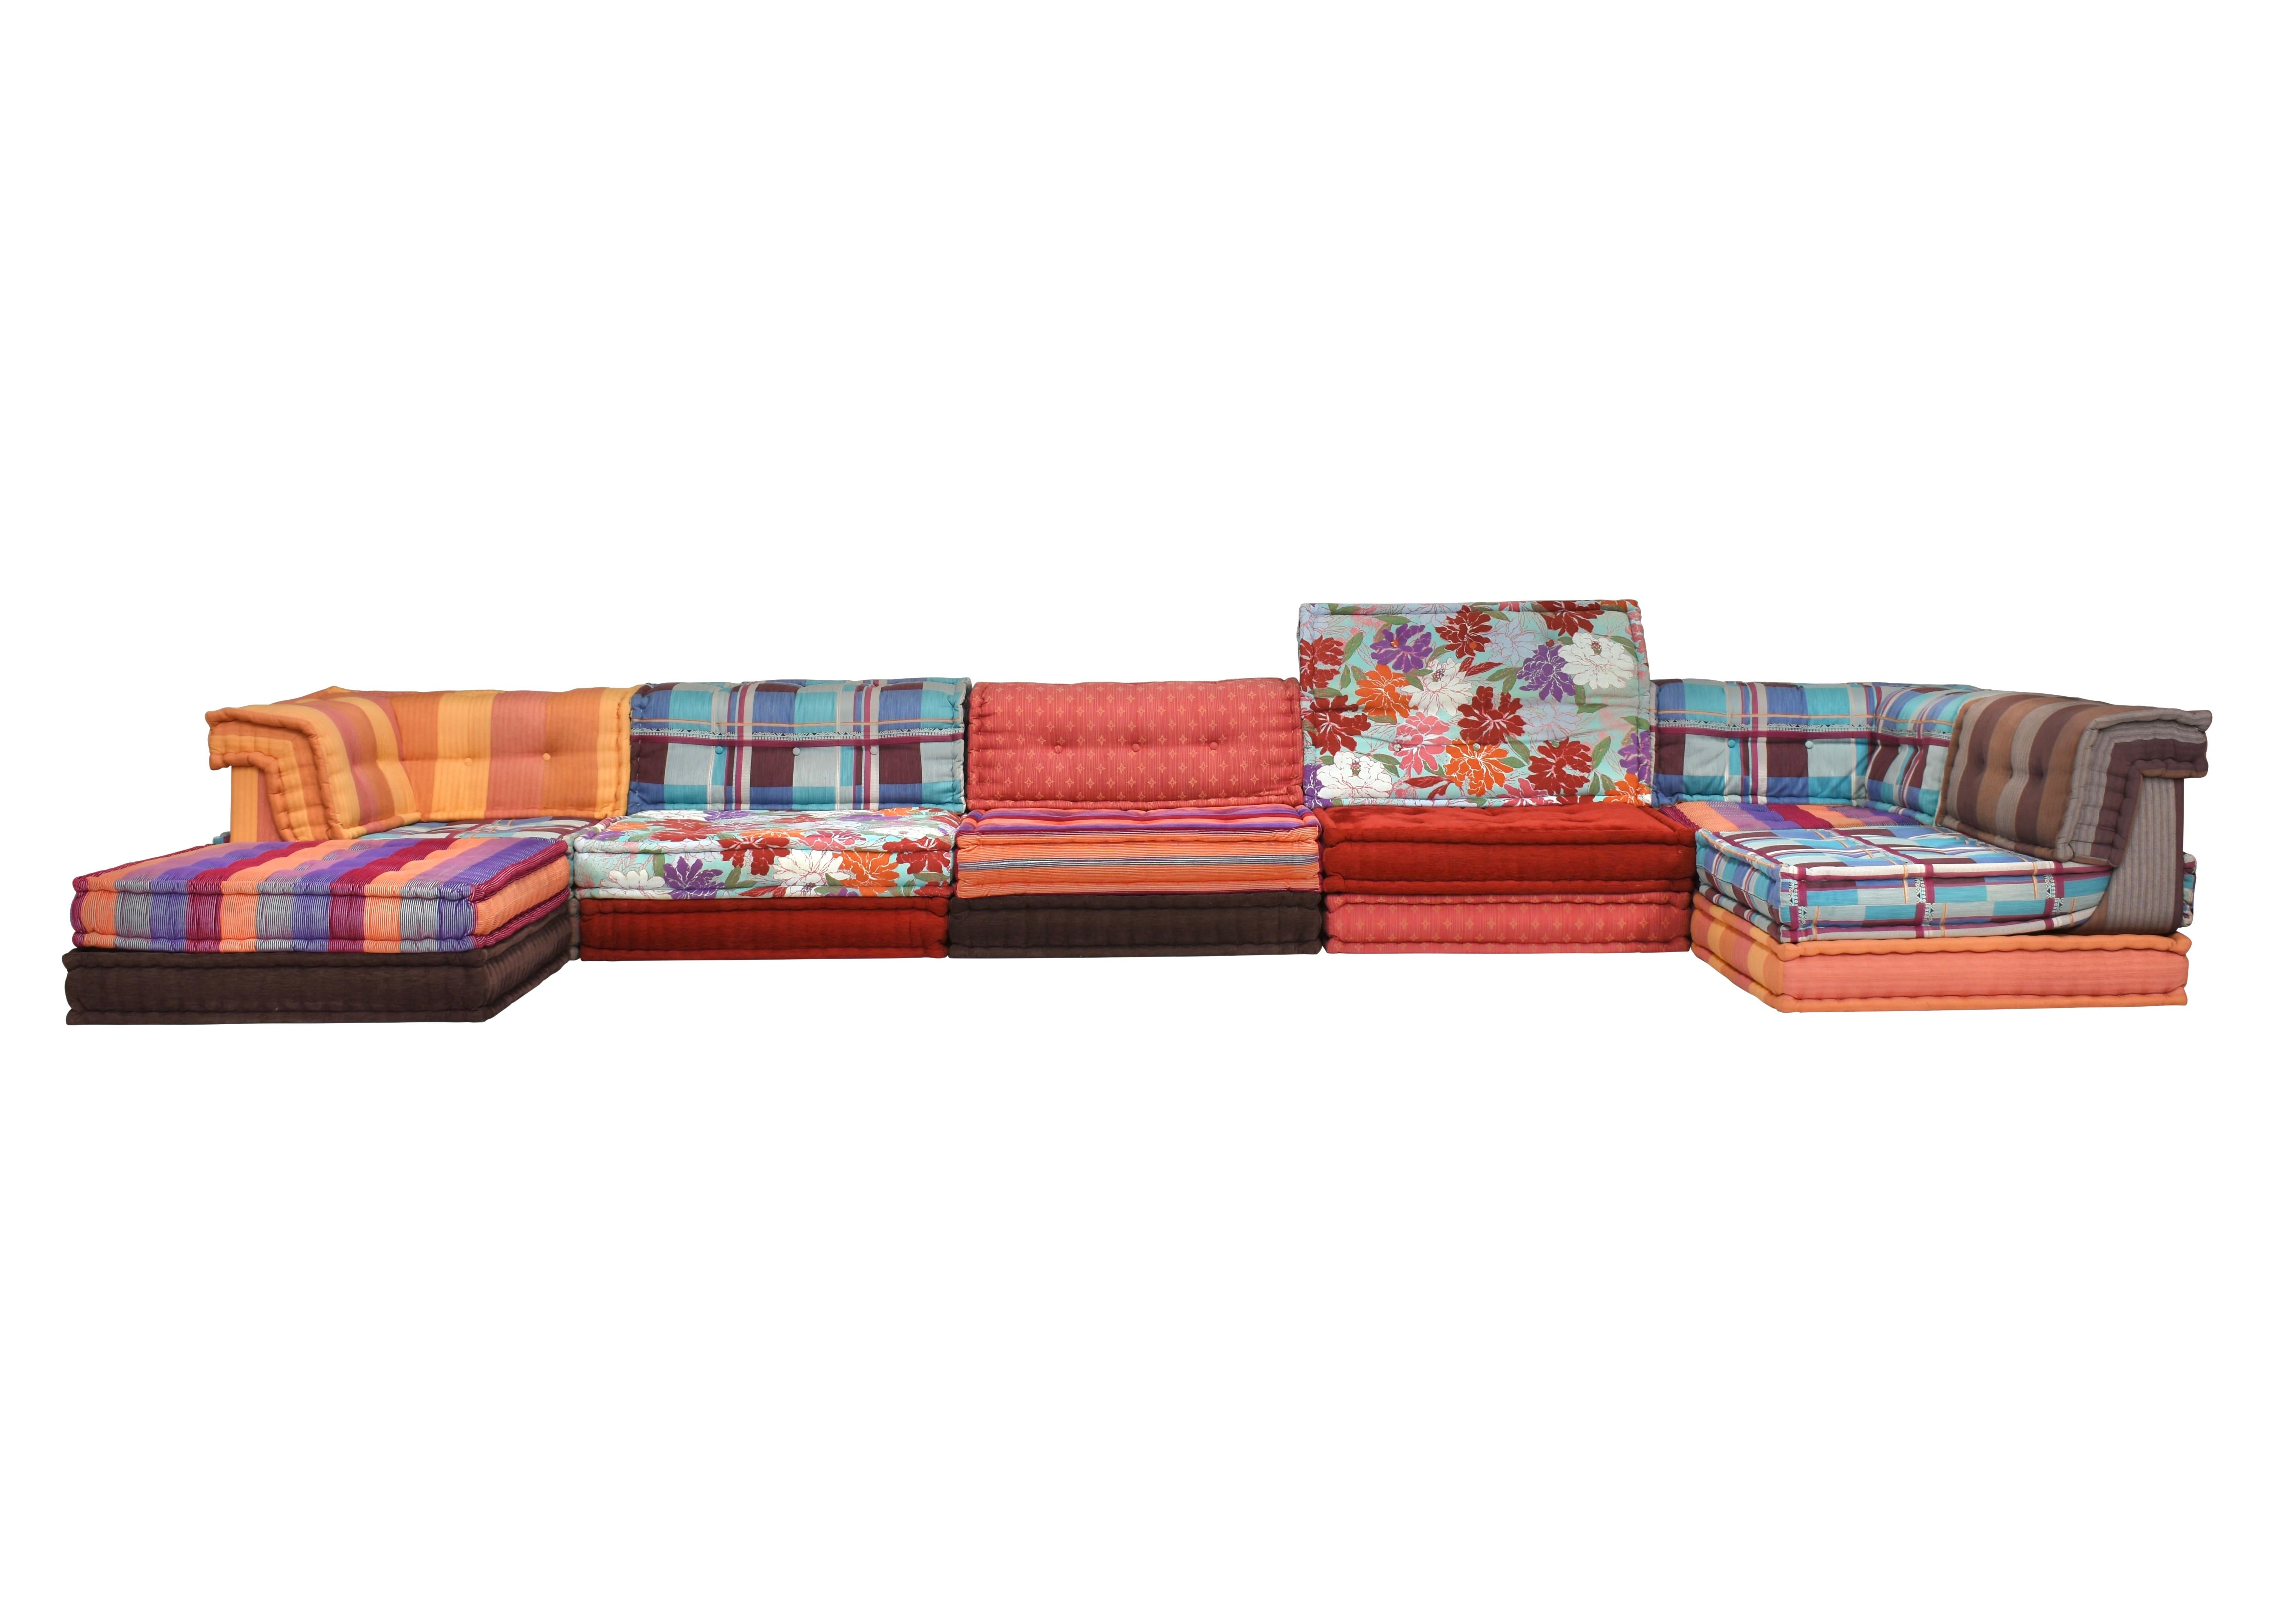 Grand canapé sectionnel Missoni en tissu original conçu par Hans Hopfer pour Roche Bobois en tissu original Missoni. France vers 1970.
Bien que cela ne soit pas nécessaire pour cet article, nous proposons également un service de rembourrage sur